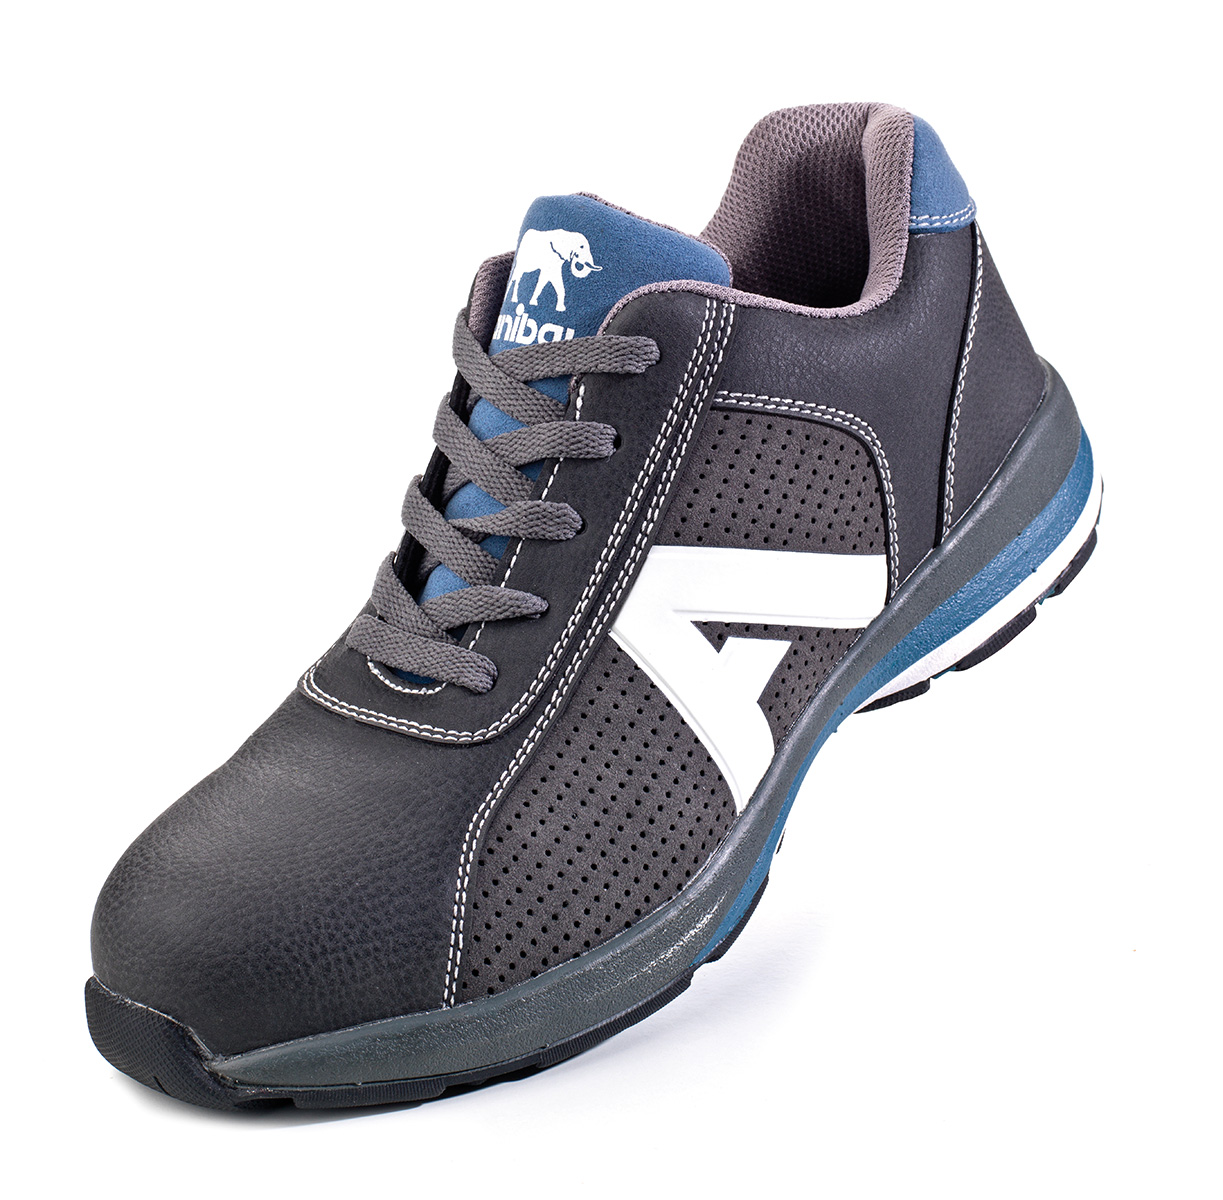 1688-ZO Calzado de Seguridad Sporty  Zapato mod. “OLIMPIA”. Zapato piel microfibra tipo Nobuk en S1P. Suela de Poliuretano doble densidad SRC.